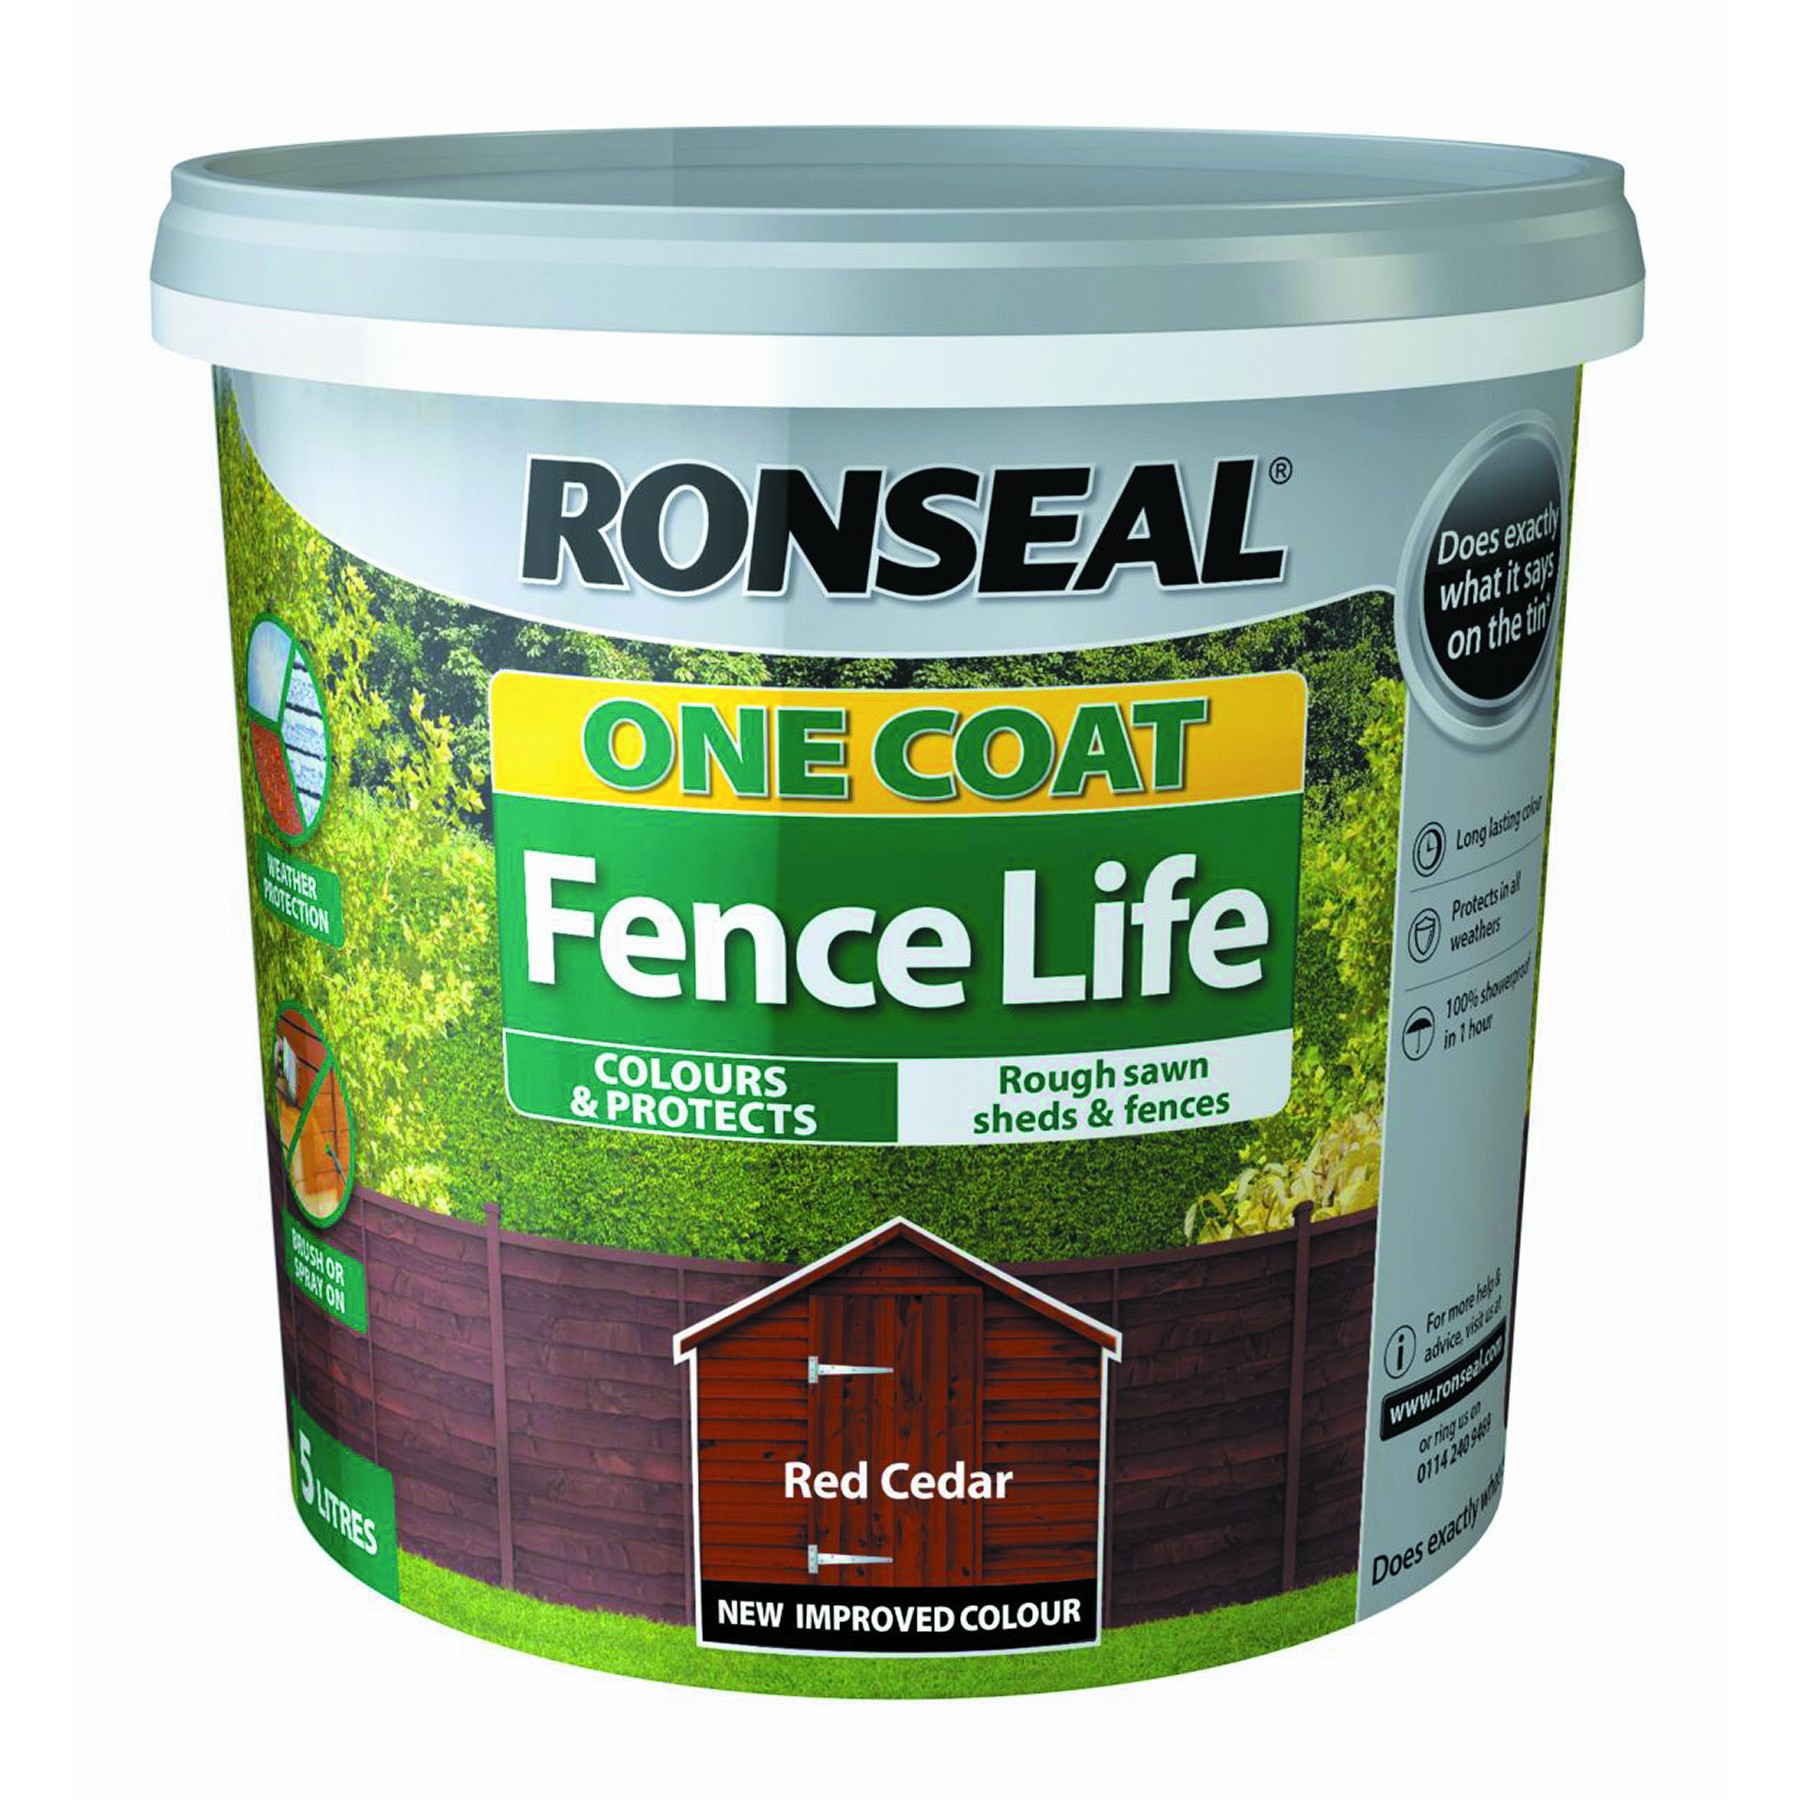 Ronseal One Coat Fence Life Tudor Black Oak 5L [RGS38293]